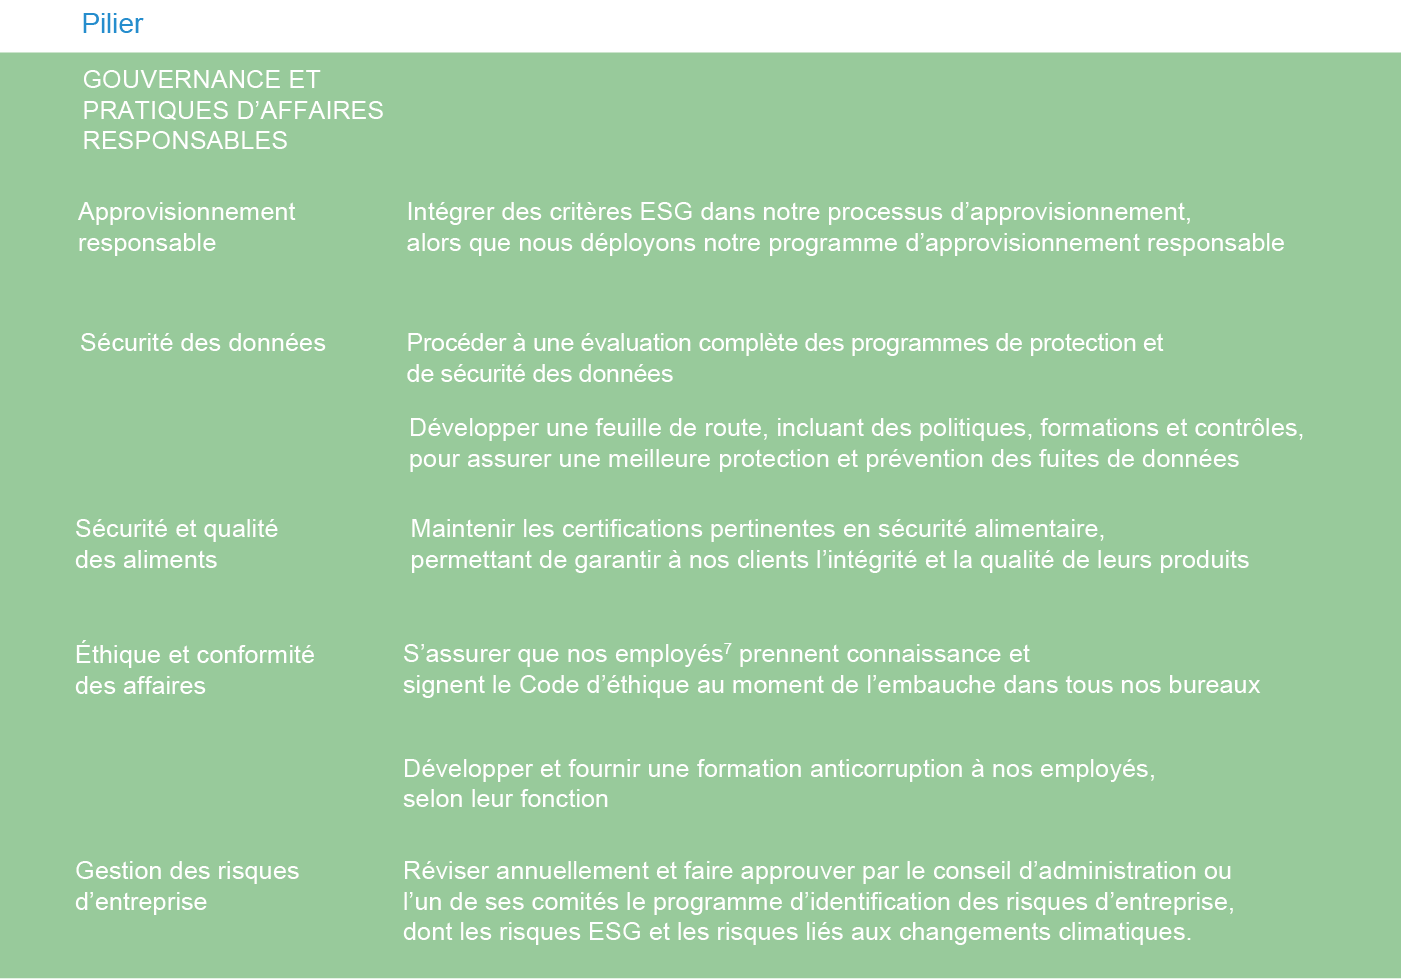 rse-tc-transcontinental-pilier 5-gouvernance pratiques affaires responsables-fr